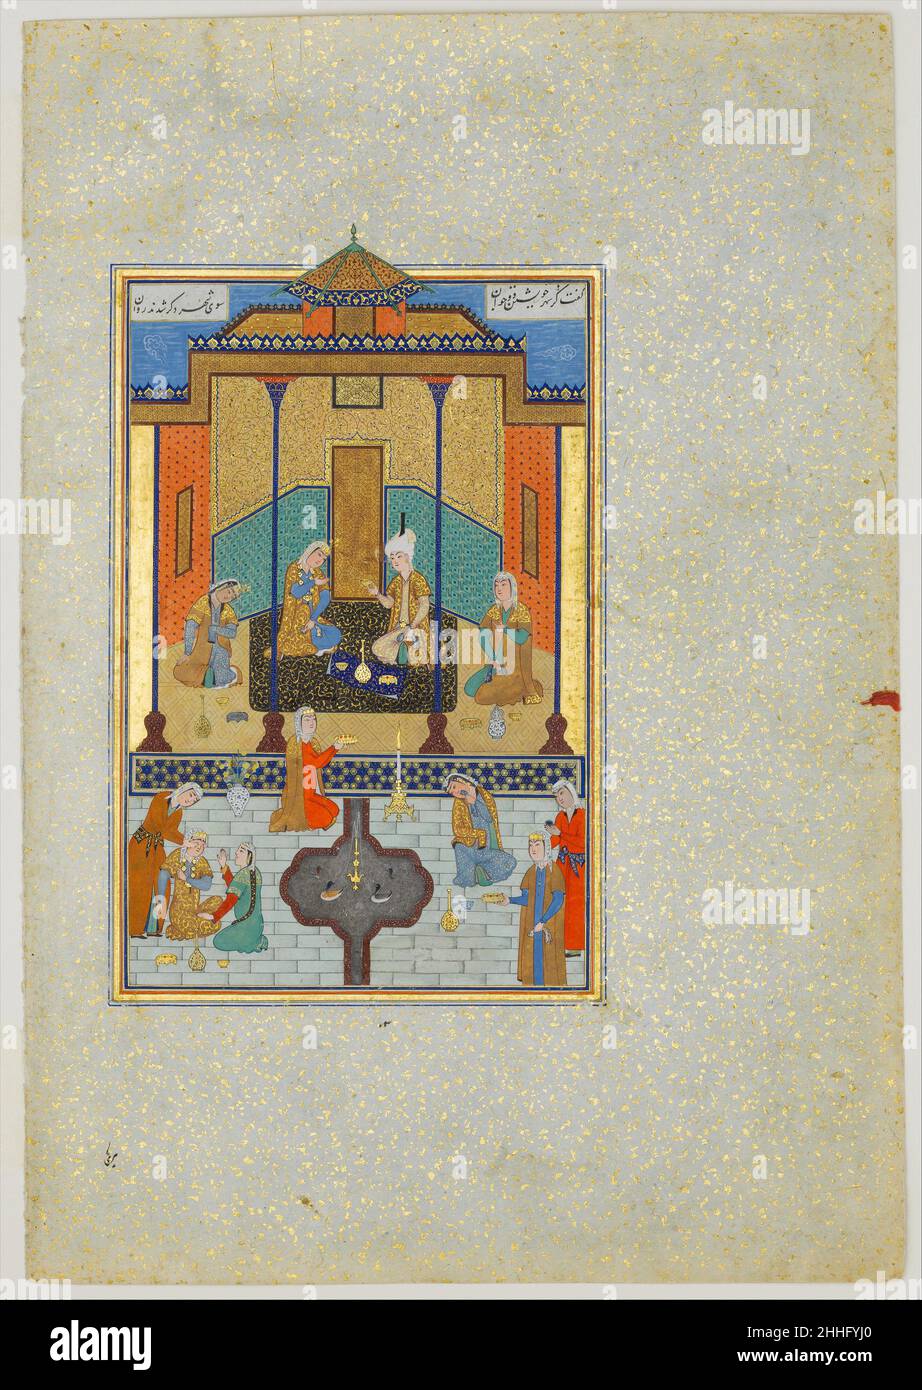 'Gur Bahram dans le Palais Sandal jeudi', Folio 230 d'un Khamsa (Quintet) de Nizami A.H. 931/A.D.1524–25 Nizami le Haft Paikar (sept Portraits) est l'un des cinq poèmes de la Khamsa de Nizami.La poésie est mystique, illustrant la suprématie de l'amour divin sur les plaisirs terrestres.Dans l'histoire, Bahram Gur épouse sept princesses des sept régions du monde et visite chacune d'elles dans son propre pavillon les nuits successives.Les différents éléments de cette scène sont tous montrés dans la perspective qui les rend les plus facilement intelligibles.Le premier plan apparaît incliné vers le haut jusqu'à souligné Banque D'Images